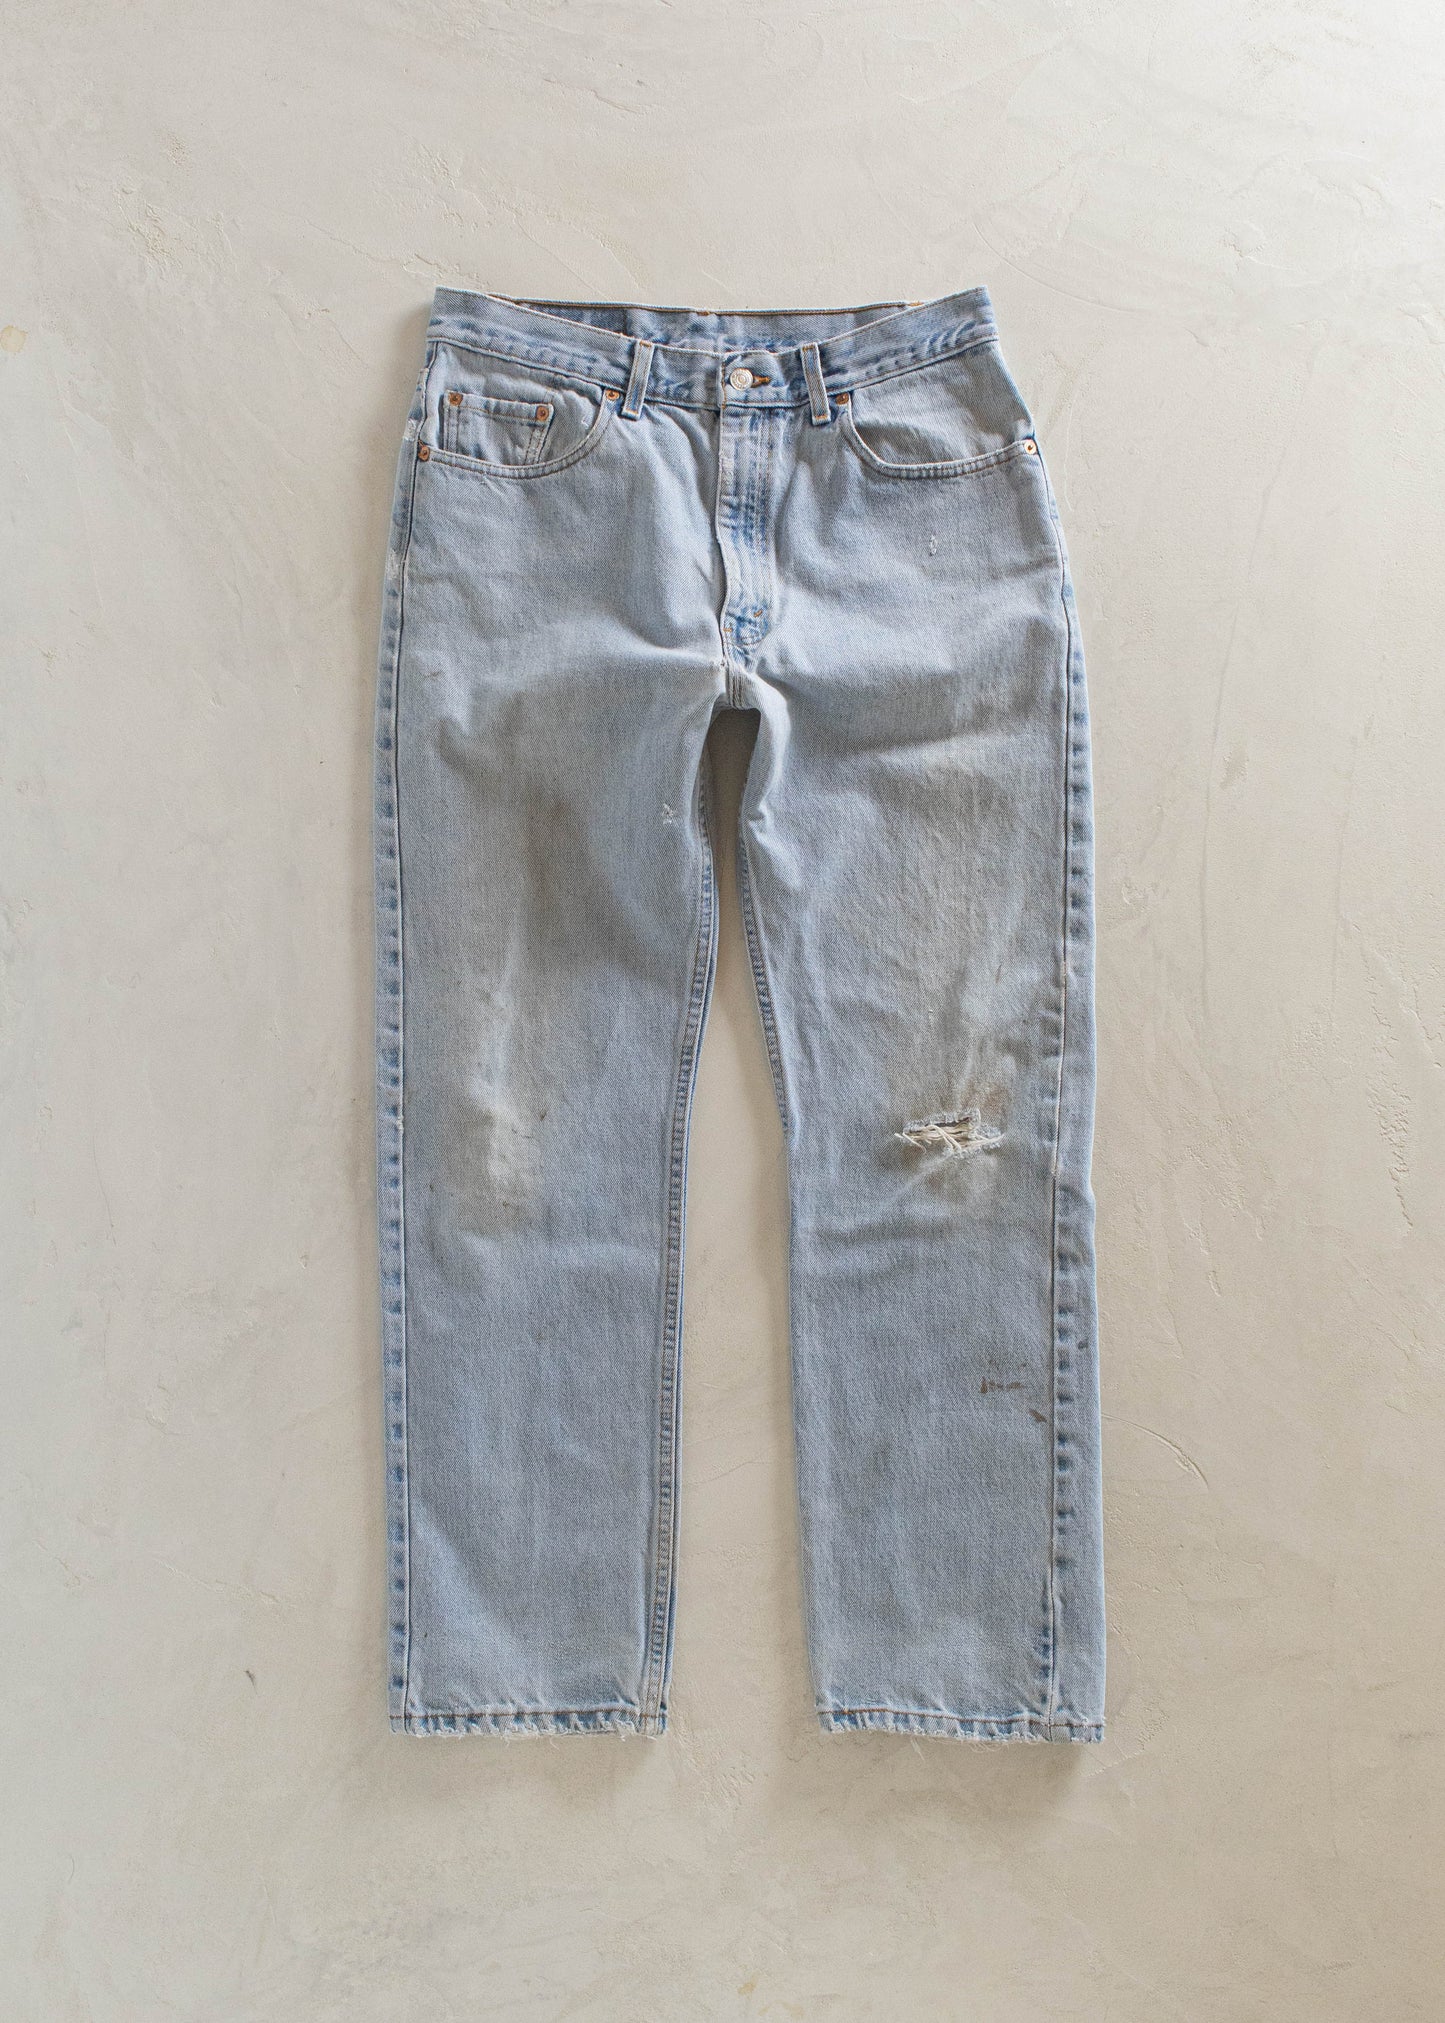 1980s Levi's 505 Lightwash Jeans Size Women's 29 Men's 32